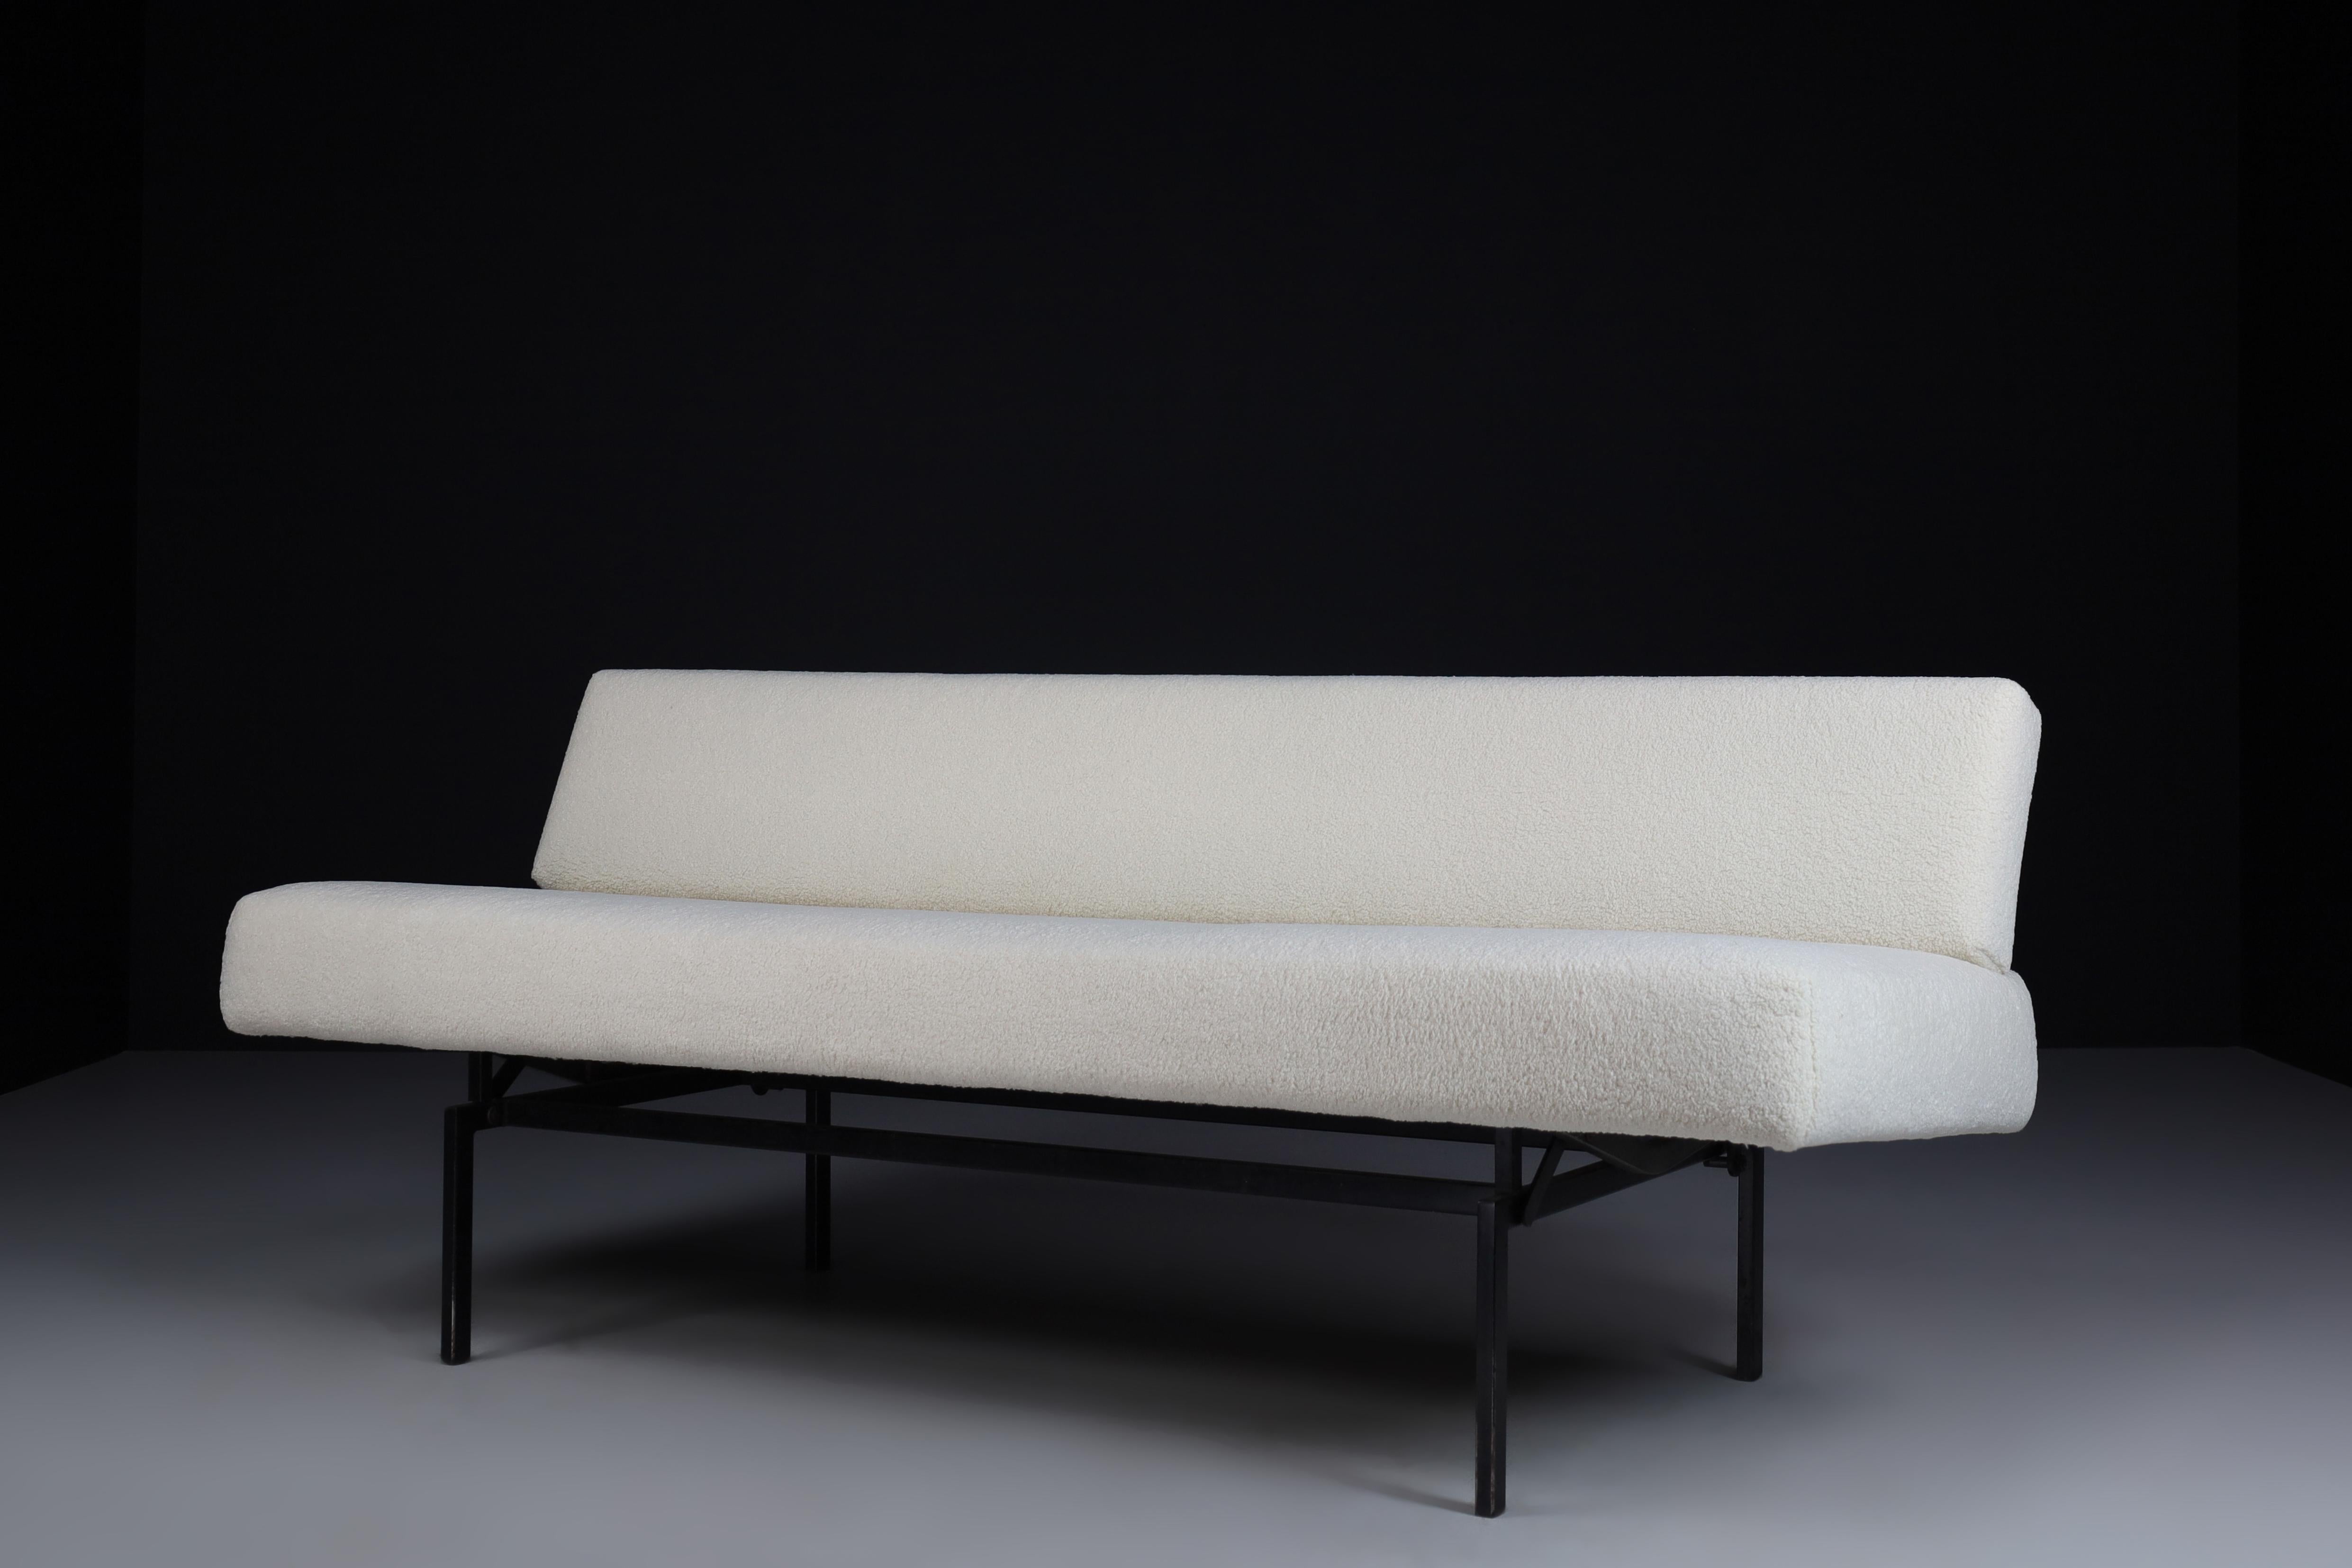 Minimalistisches Sofa, entworfen von Martin Visser für 't Spectrum und frisch gepolstert mit neuem Teddy-Stoff. Struktur aus Metall.
2 Positionen, kann im Bett umgewandelt werden. Dieses minimalistische Sofa ist ein echter Blickfang für jedes